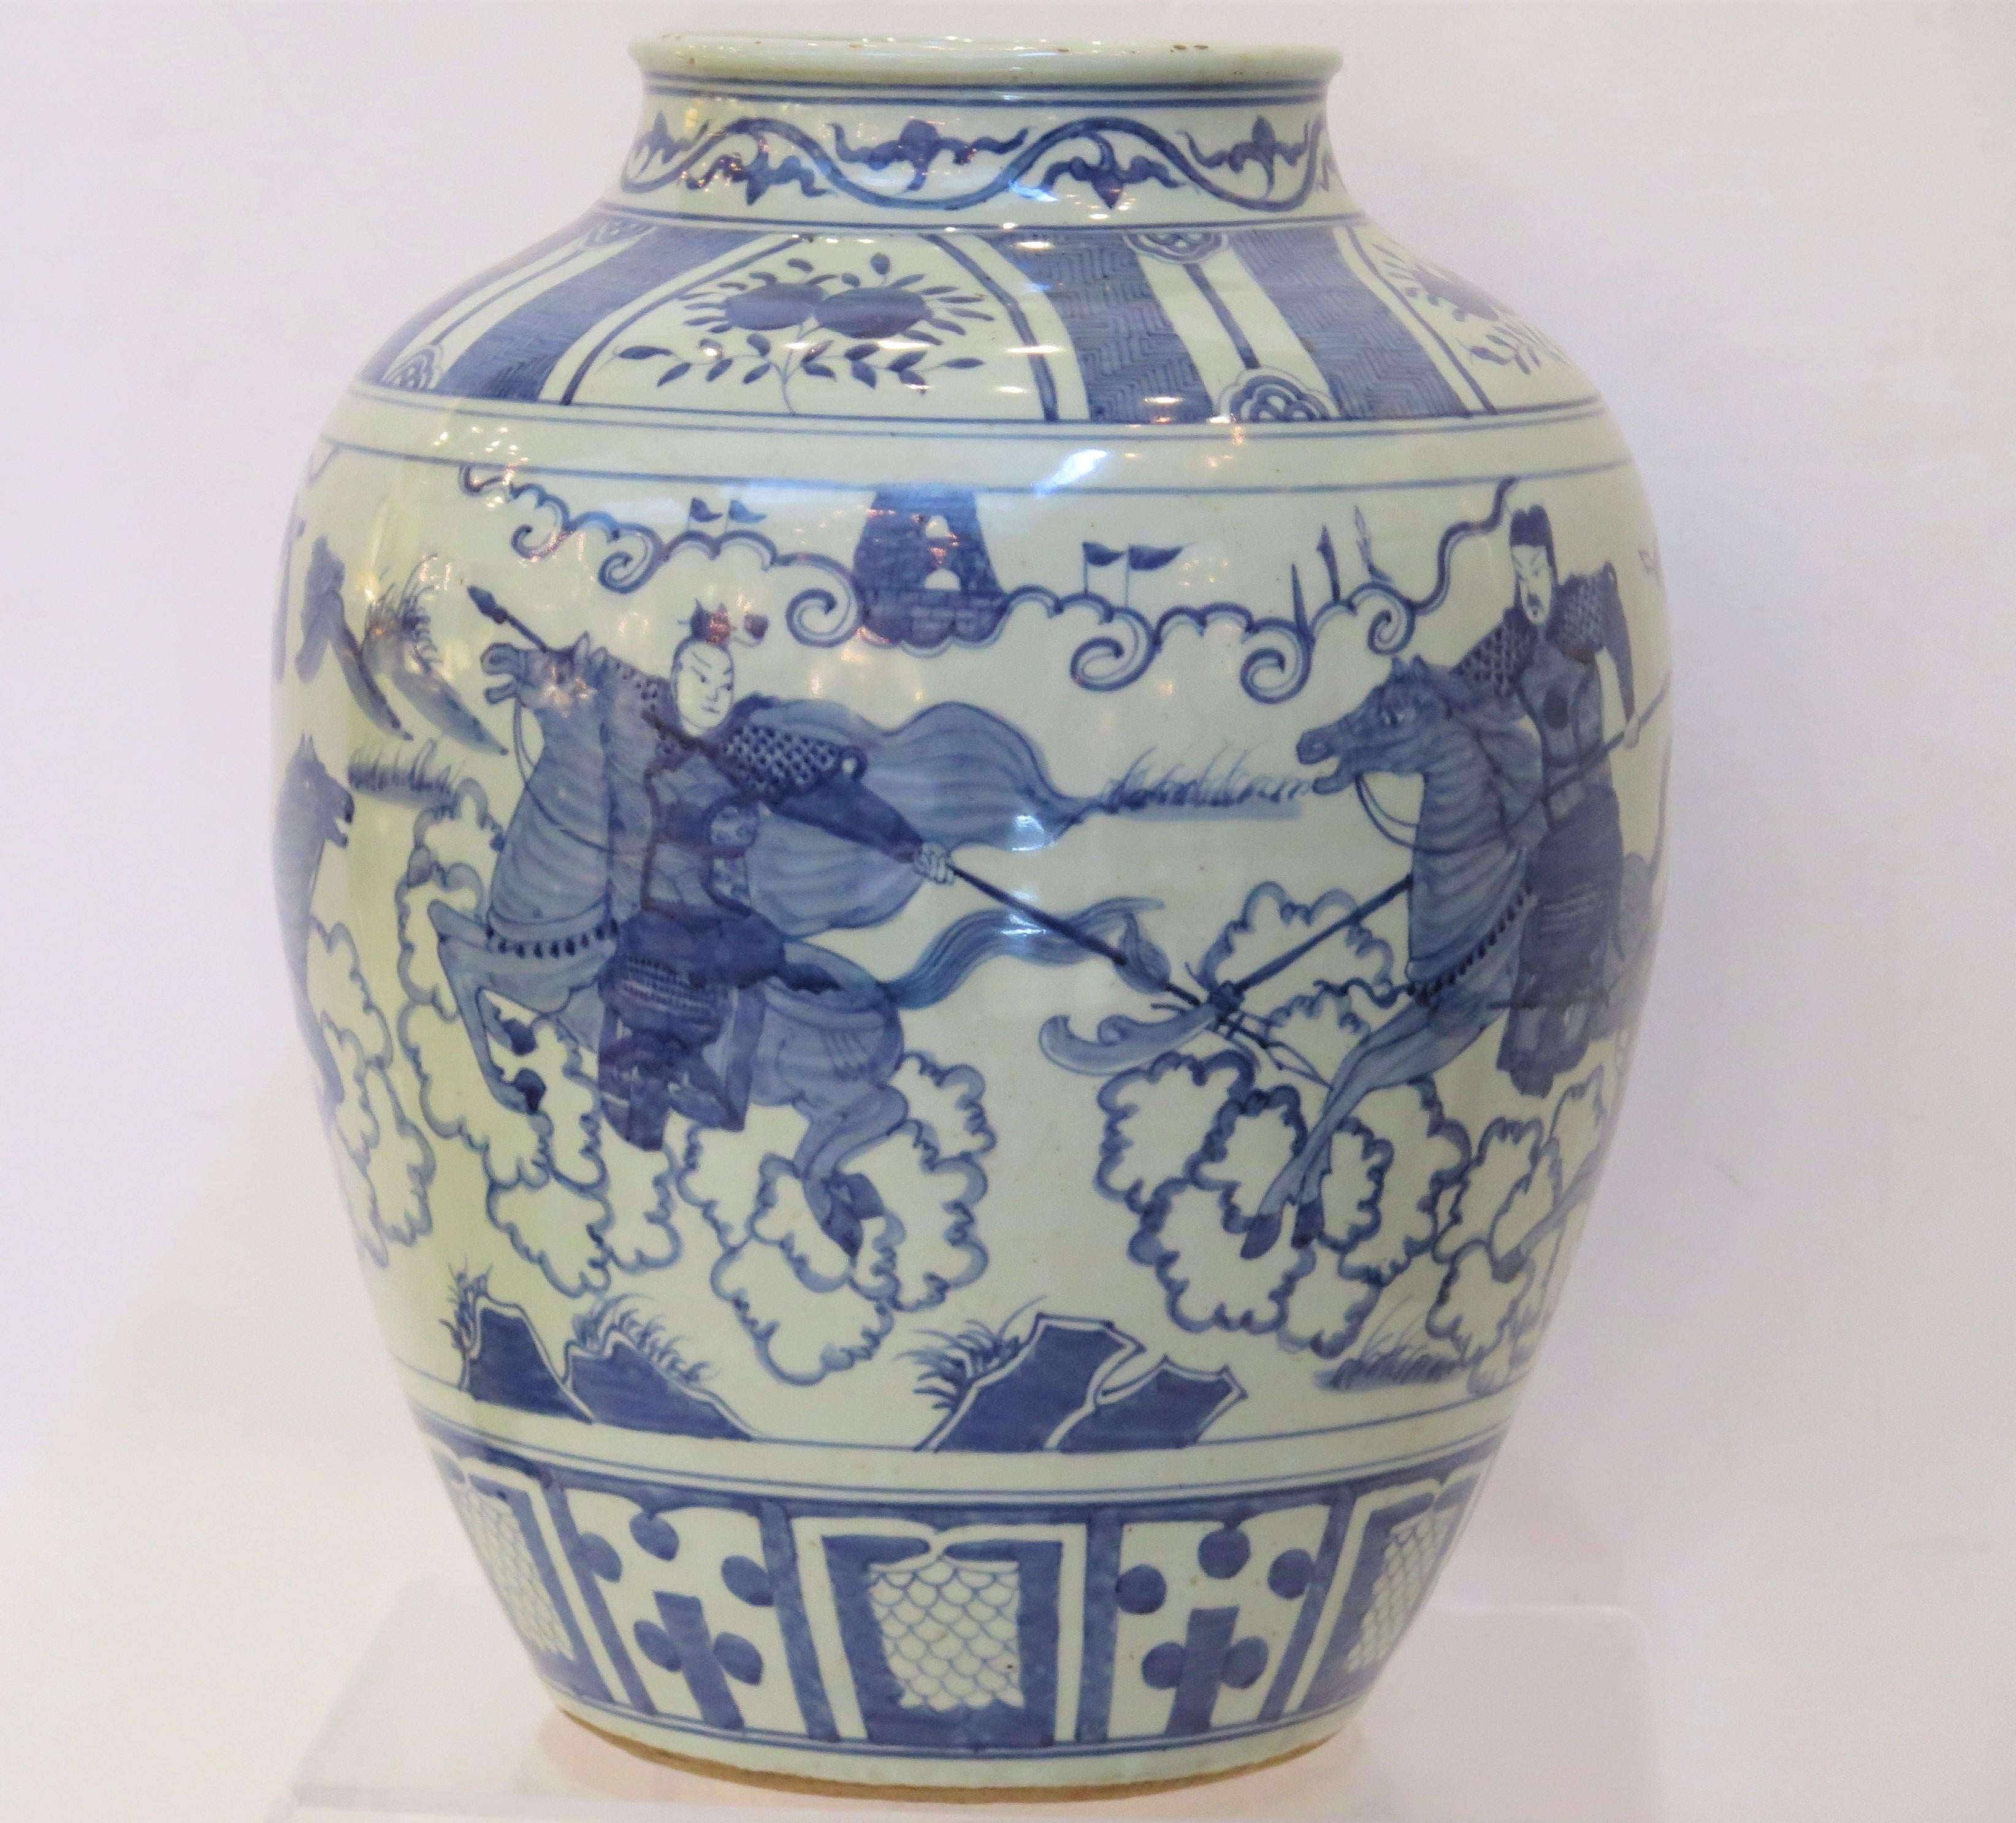 Jarn chinois bleu et blanc du 19e siècle décoré d'hommes à cheval / de guerriers.    ( Jarre en porcelaine chinoise ) 

16,5